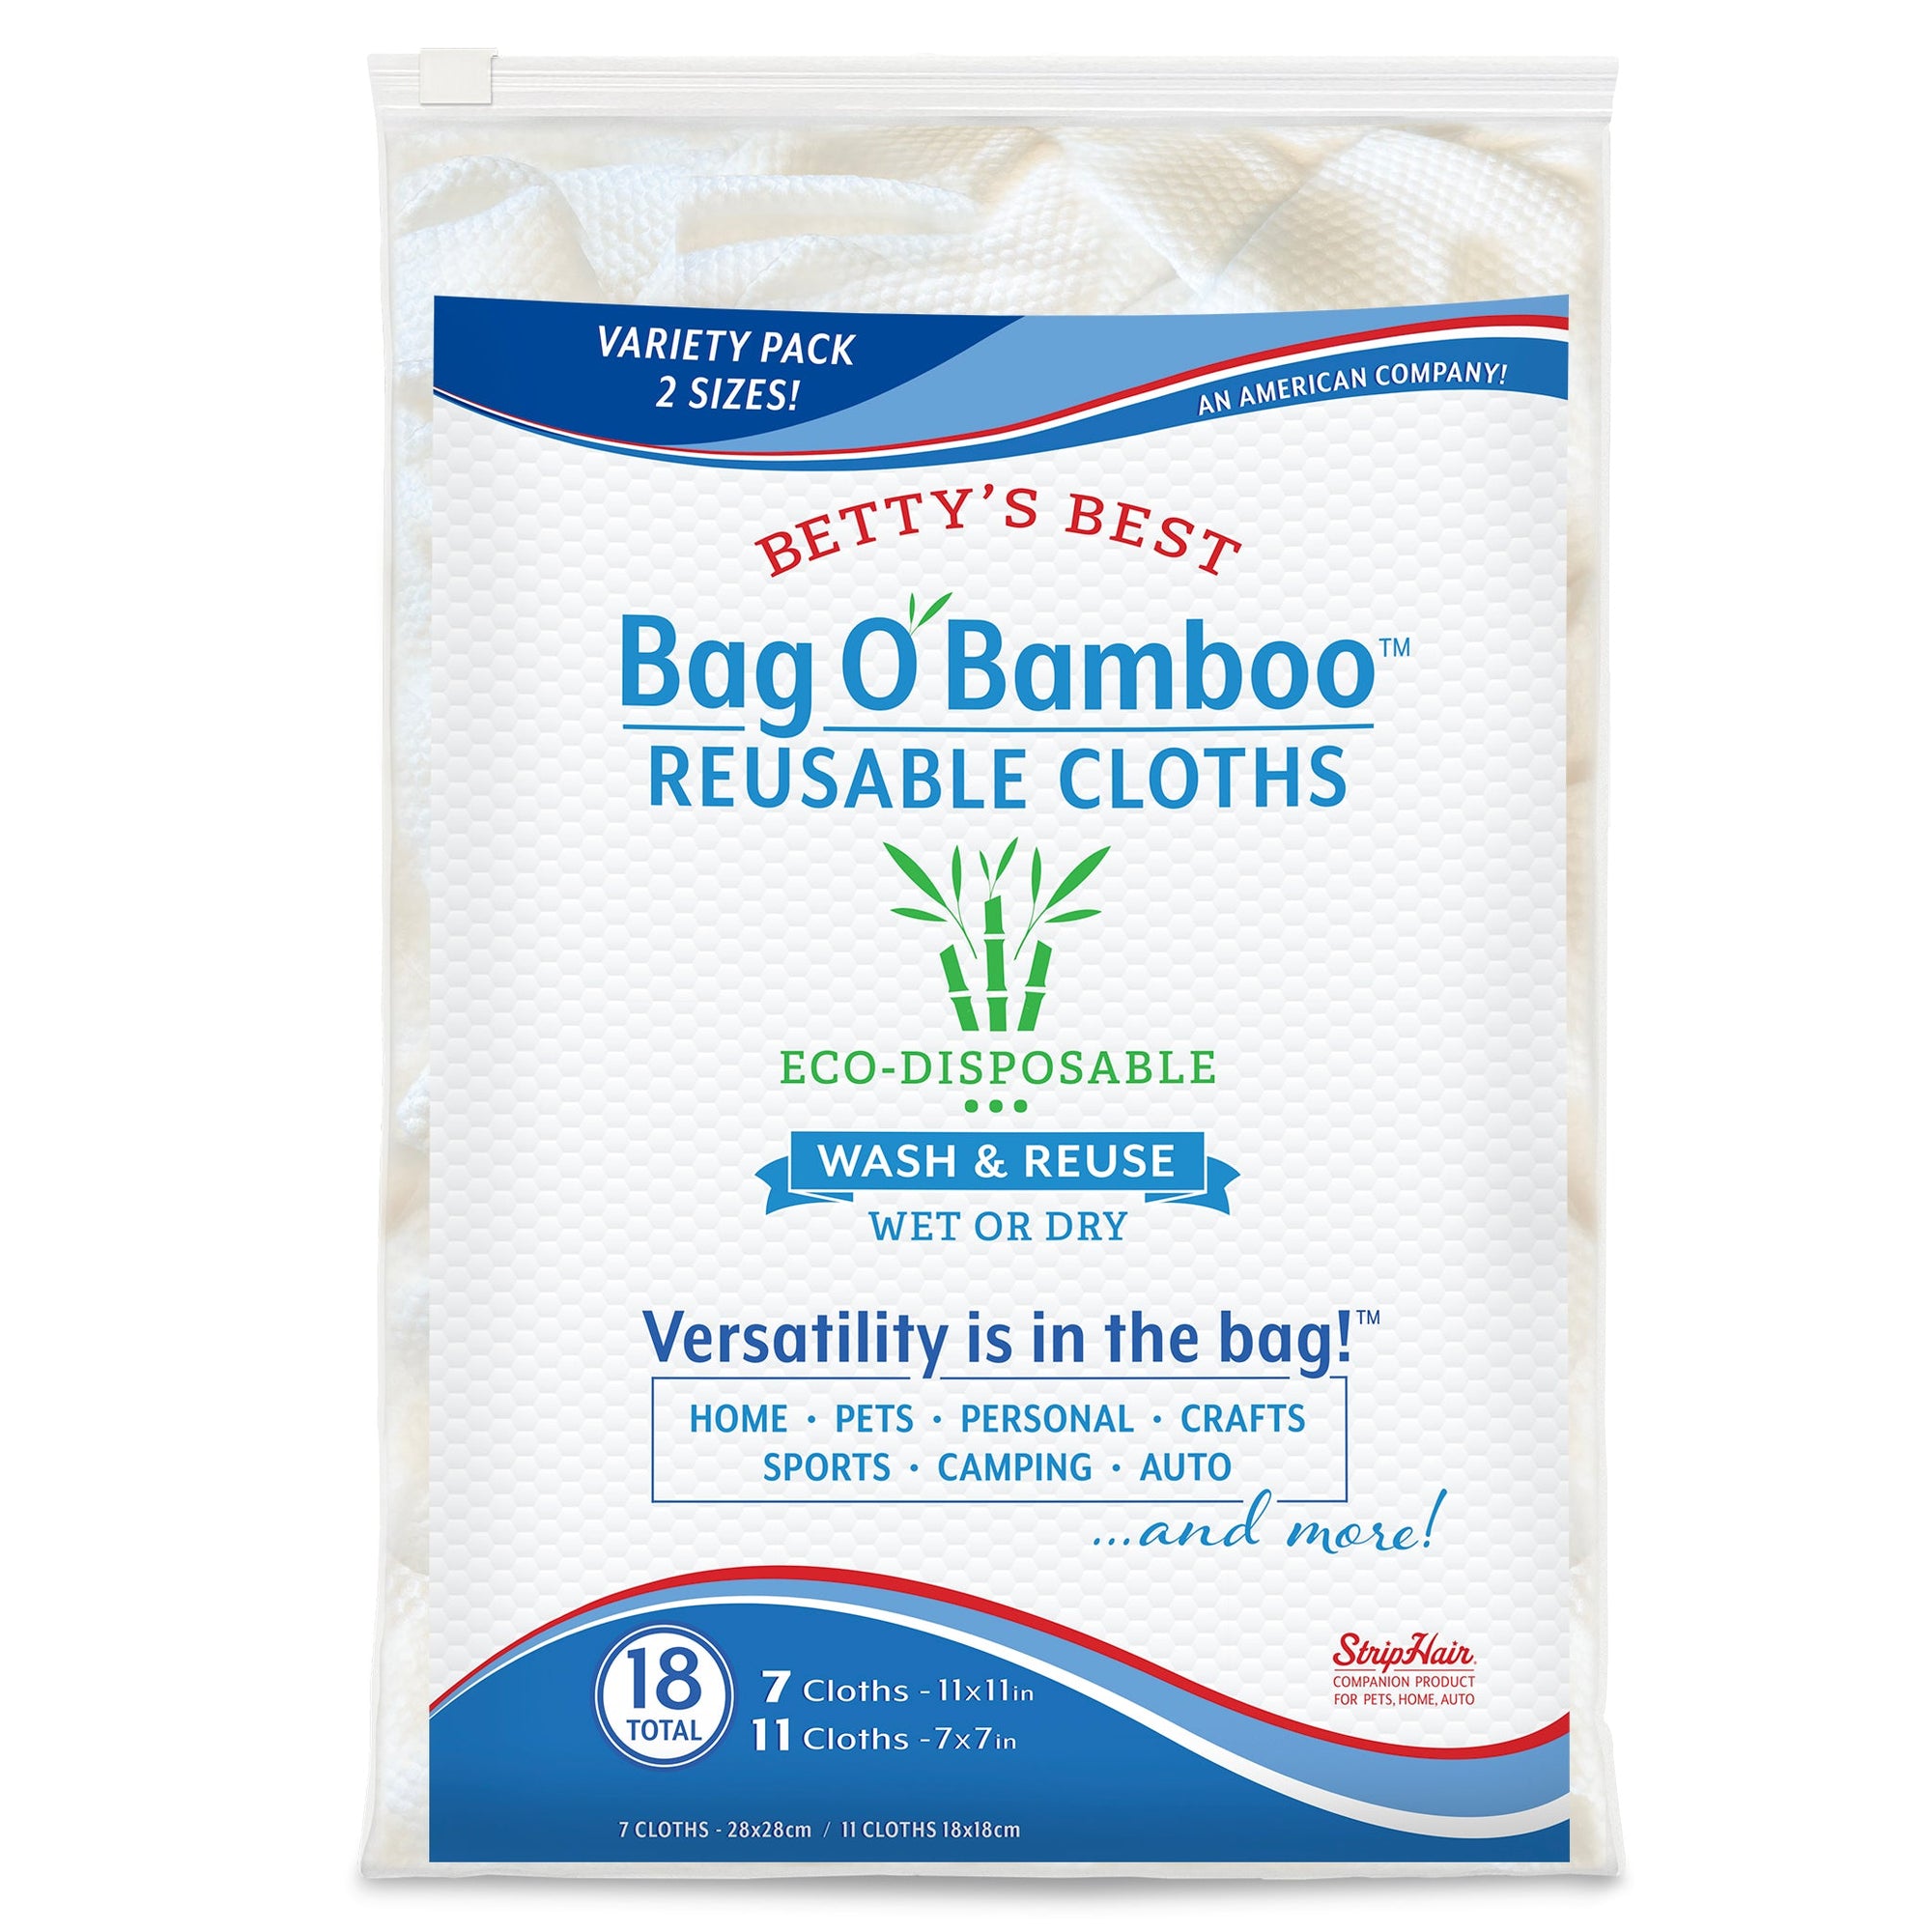 Bag O' Bamboo Reusable Cloths